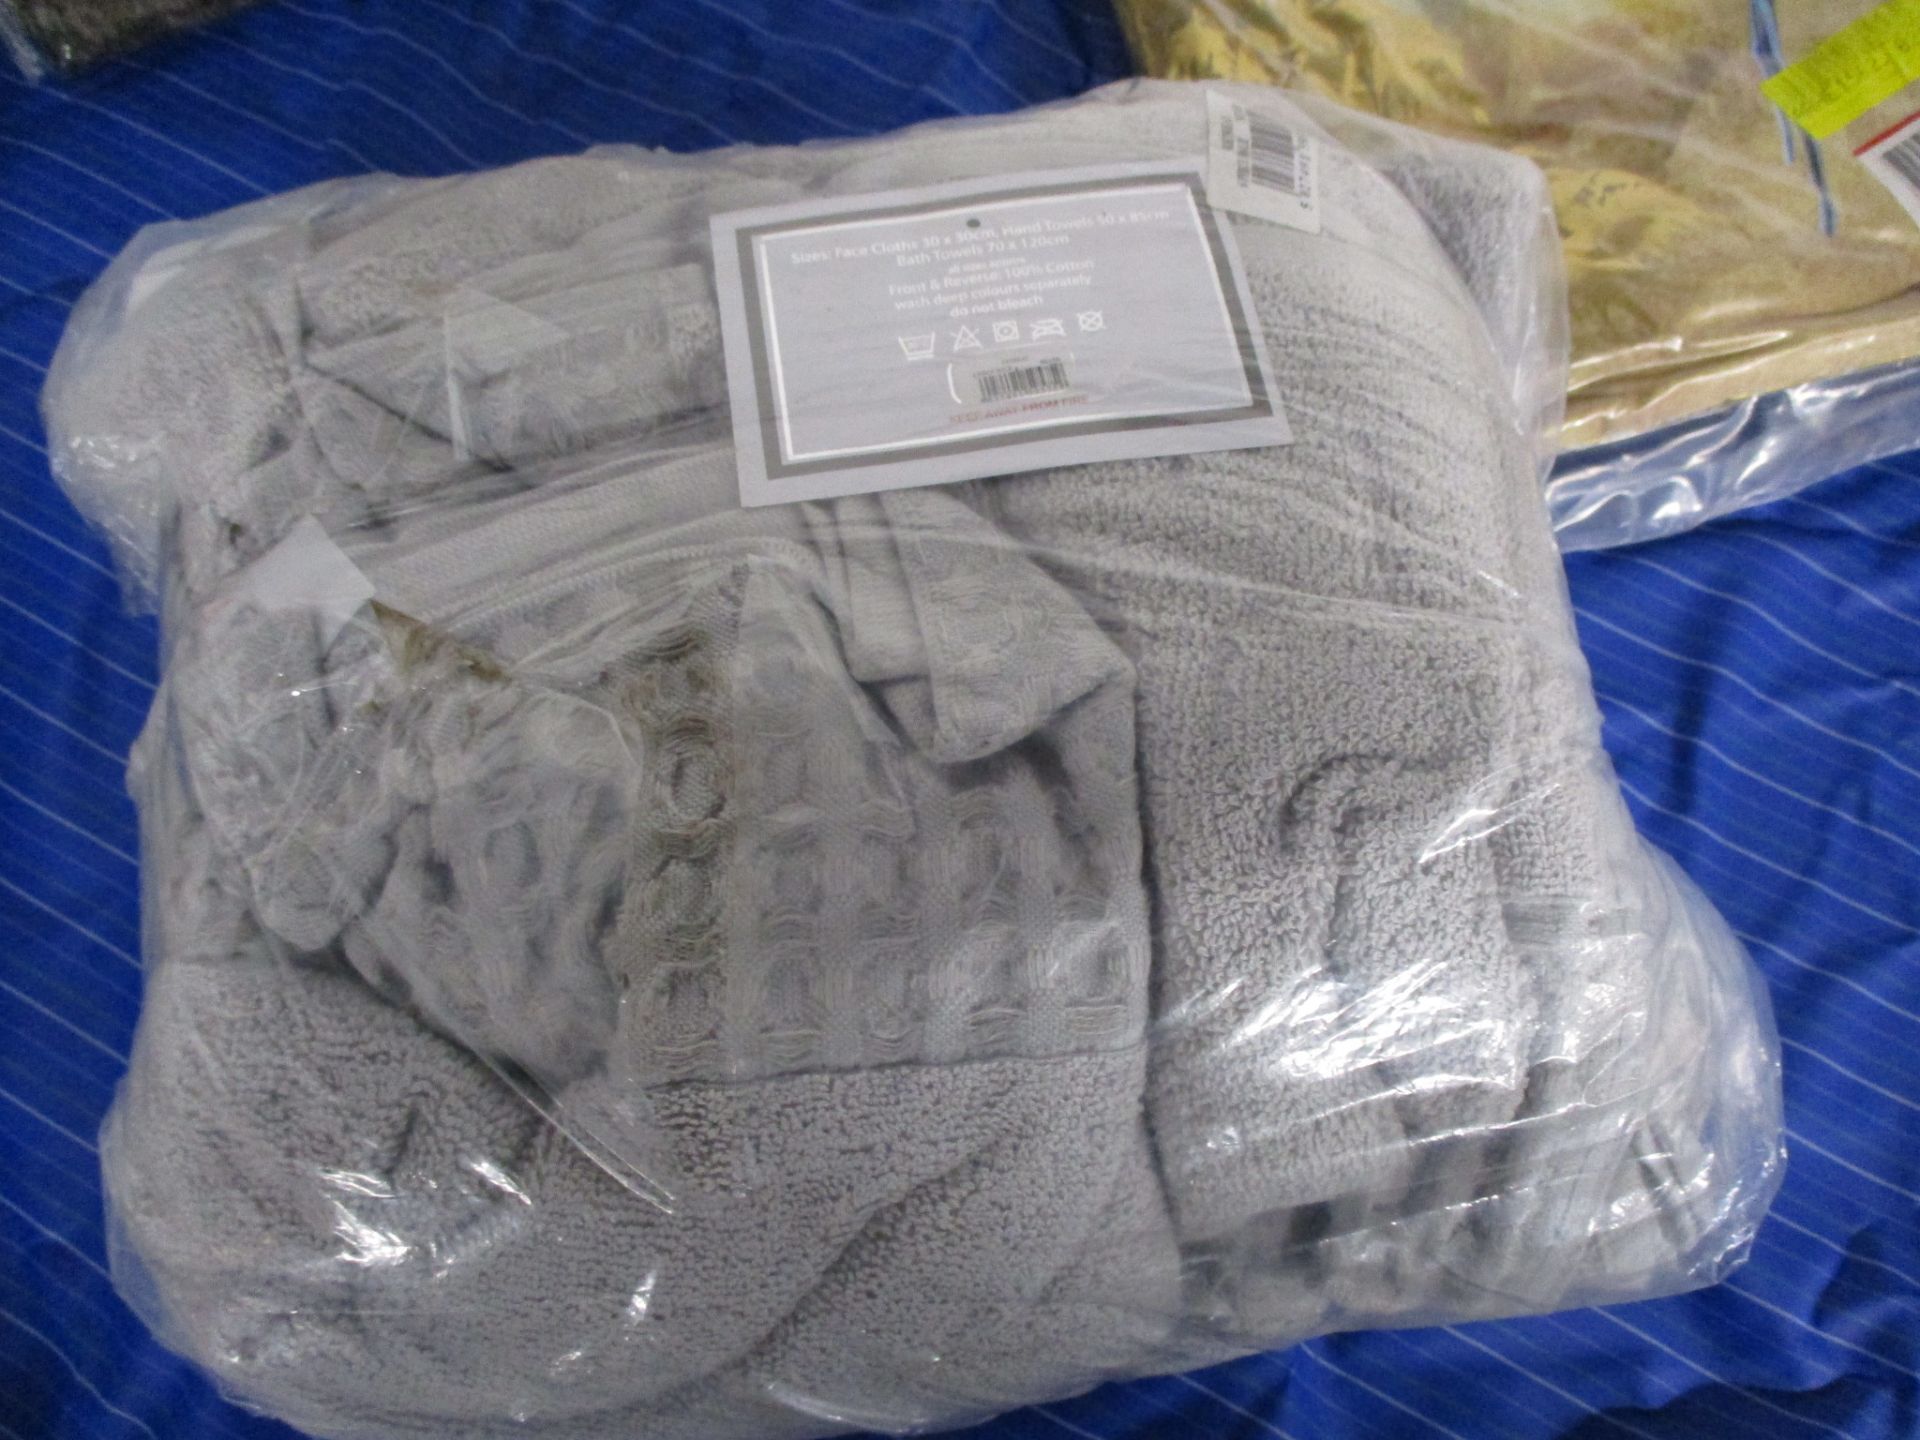 Symple Stuff 6 Piece Towel Set, Colour: Silver, RRP £23.99 - Image 2 of 2